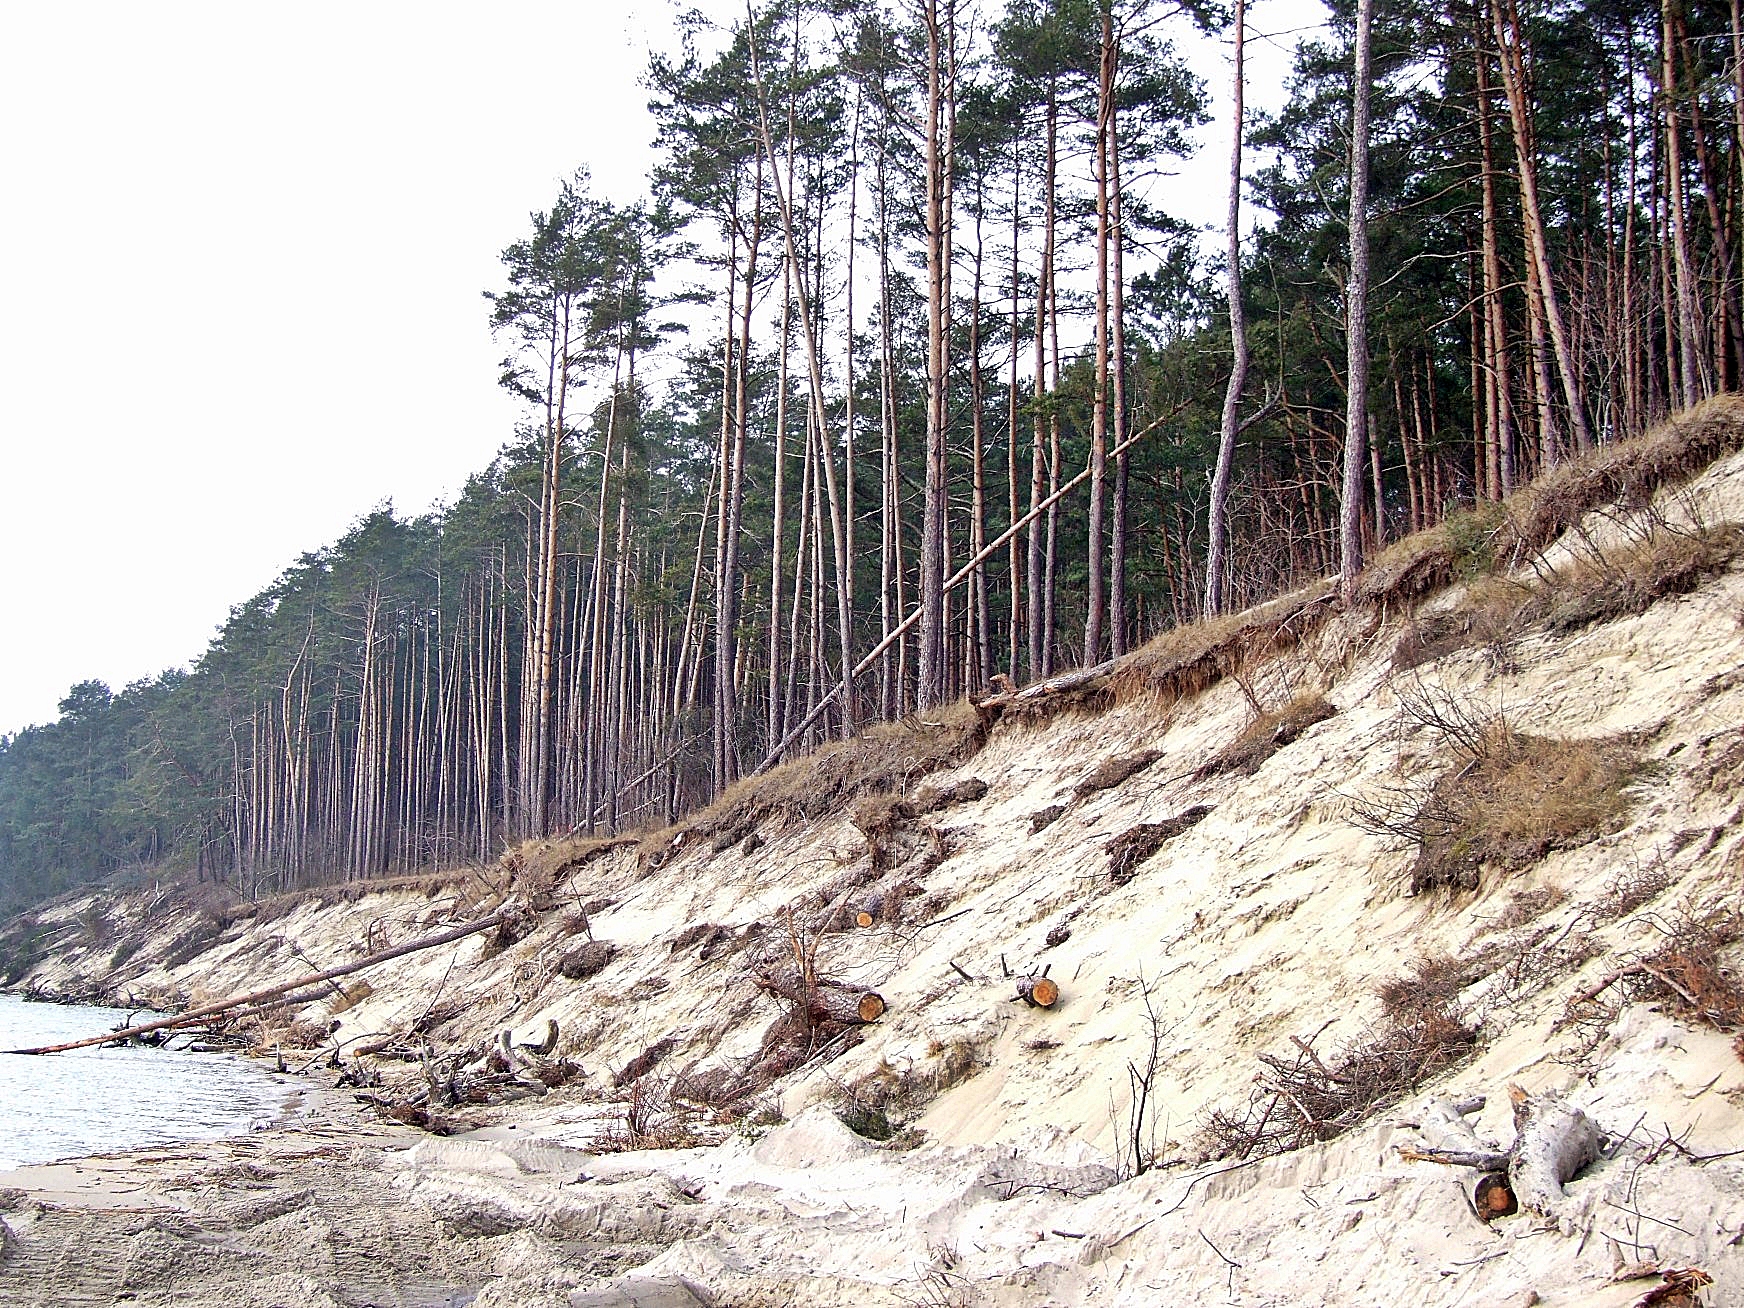 Zdjęcie odsłoniętego, piaszczystego zbocza, na którego koronie rośnie las. Widoczne drzewa, które spadły z krawędzi klifu.